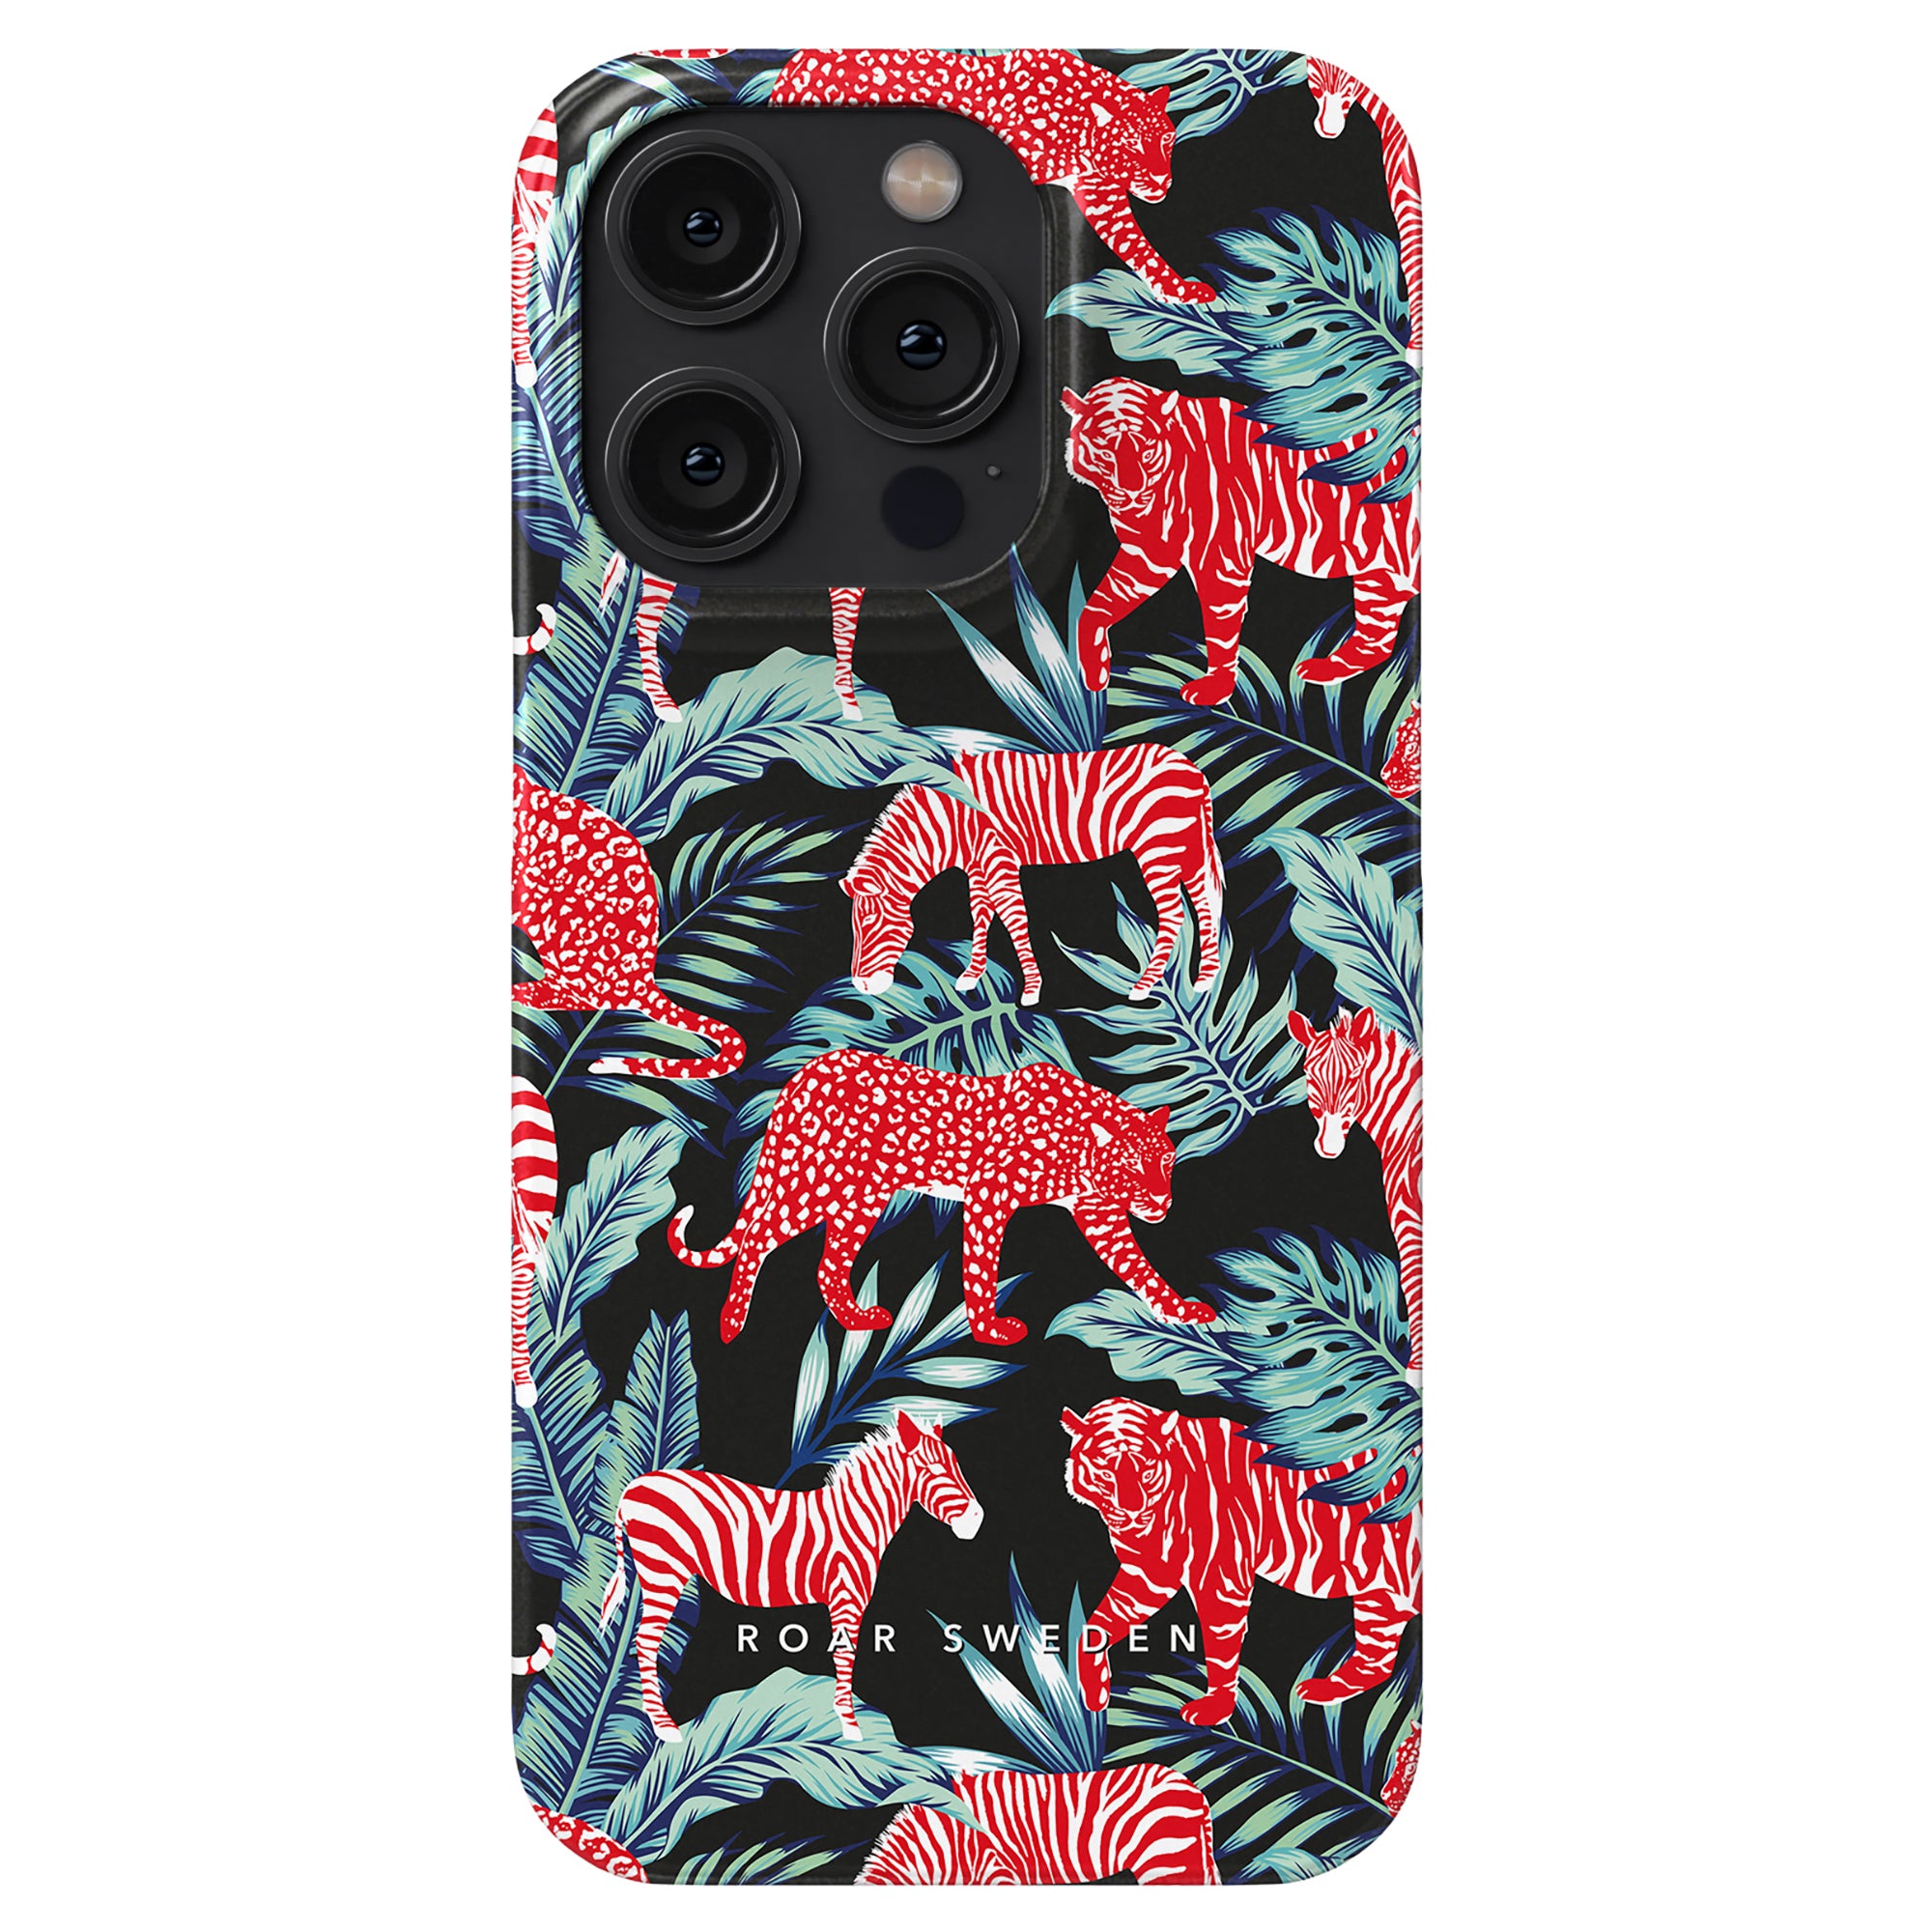 Produktbeskrivning: Förbättra din telefon med Fauna - Slim-fodralet, ett elegant och snyggt svart och rött telefonfodral prydd med häftiga tigrar.